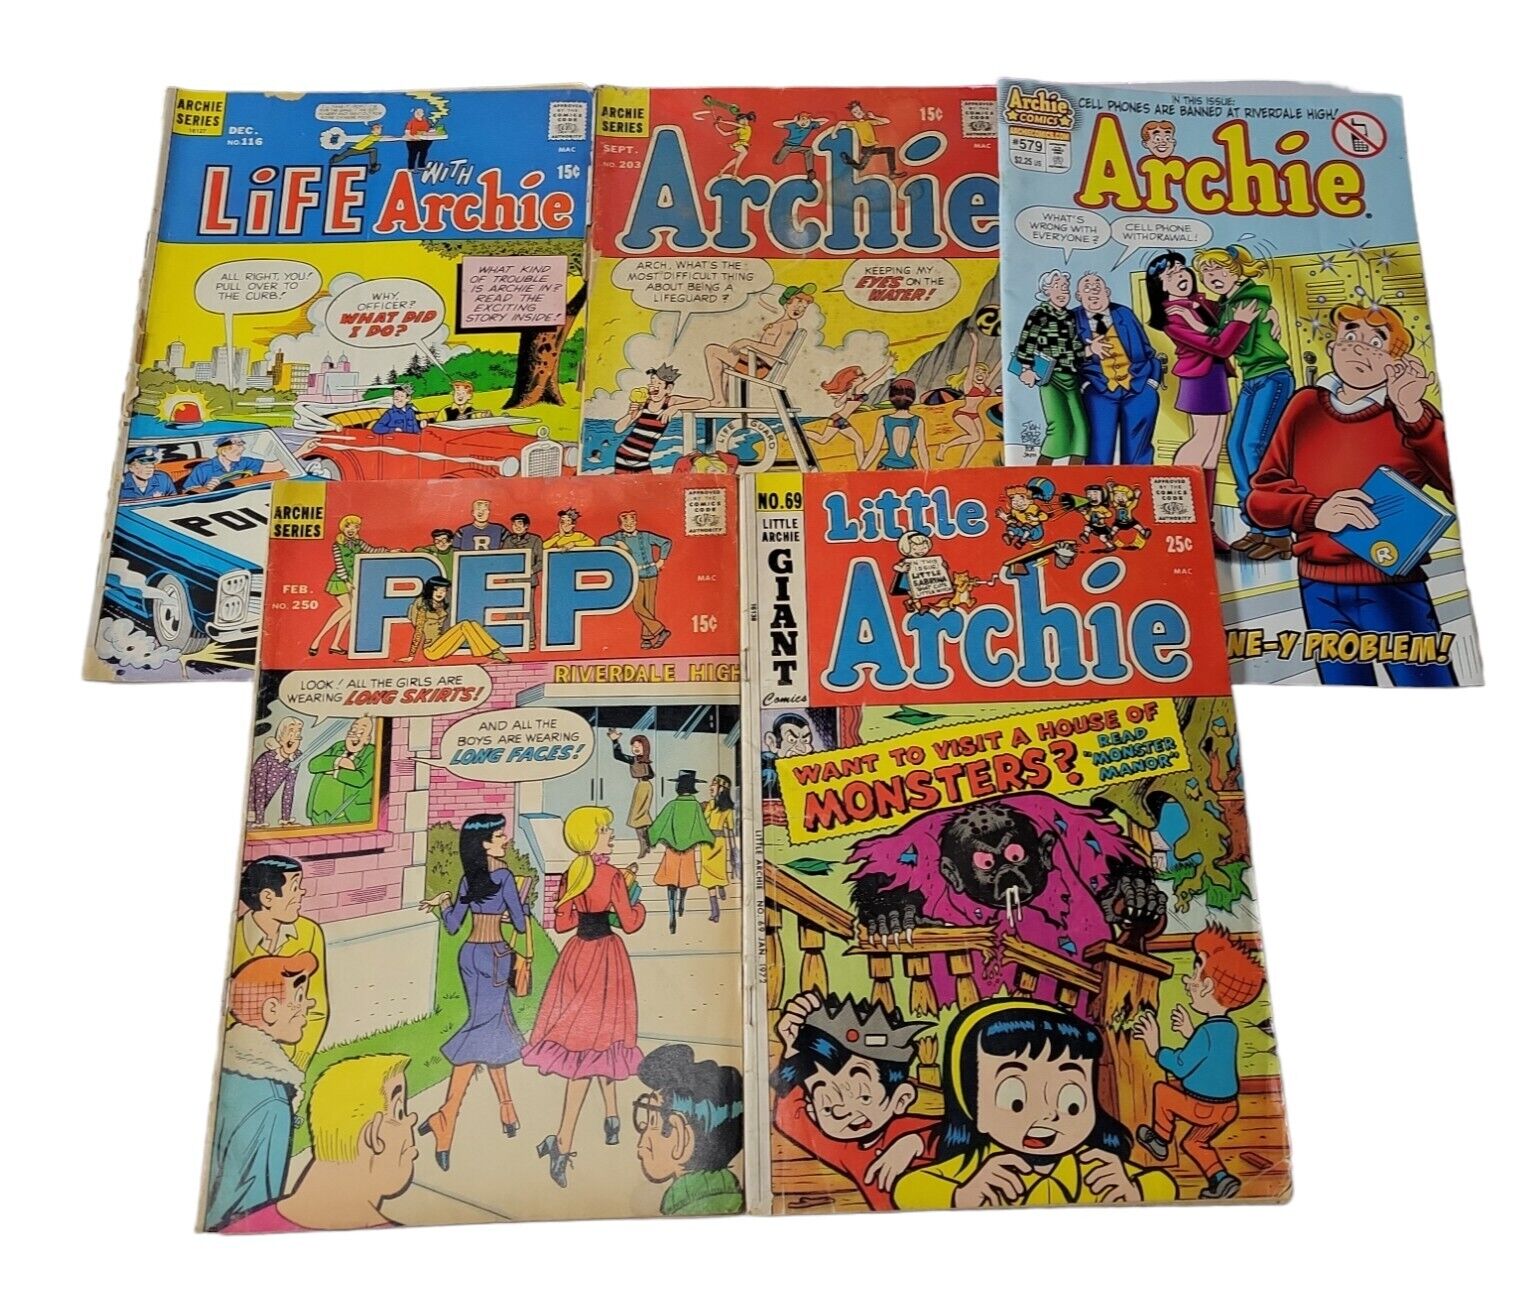 Vtg 1970s Archie Comics Life With Archie, Little Archie, PEP, 2007 Archie Fair